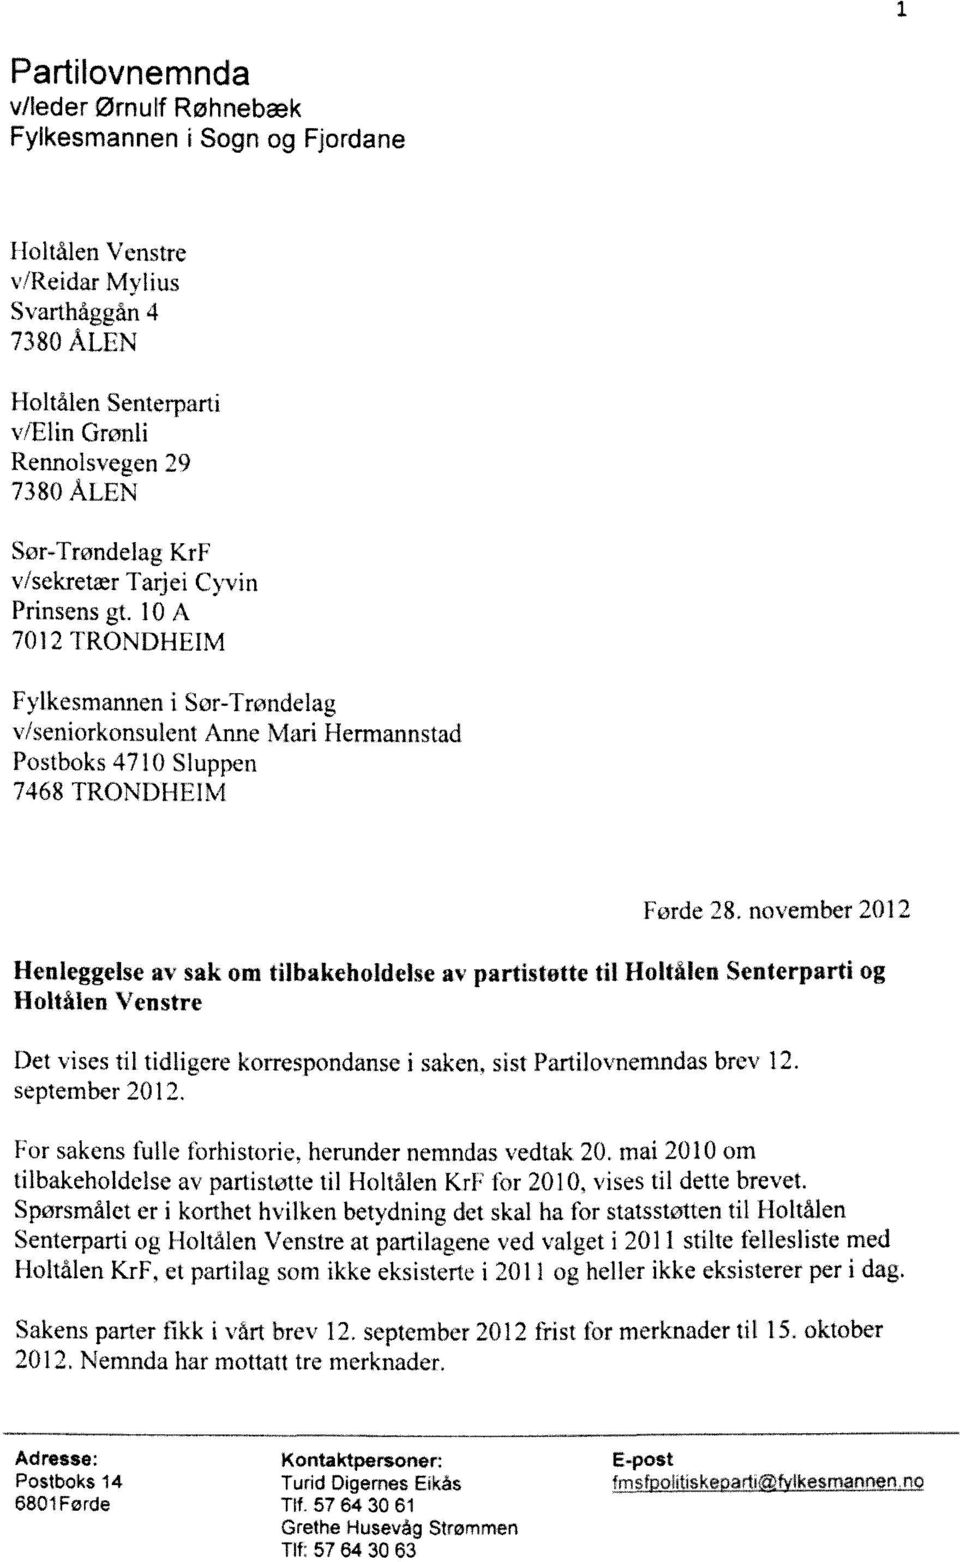 november 201"' Henleggelse av sak om tilhakeholdelse av partistøtte til Holtalen Senterparti og Holtålen Venstre Det vises til tidligere korrespondanse i saken, sist Partilovnemndas brev 12.